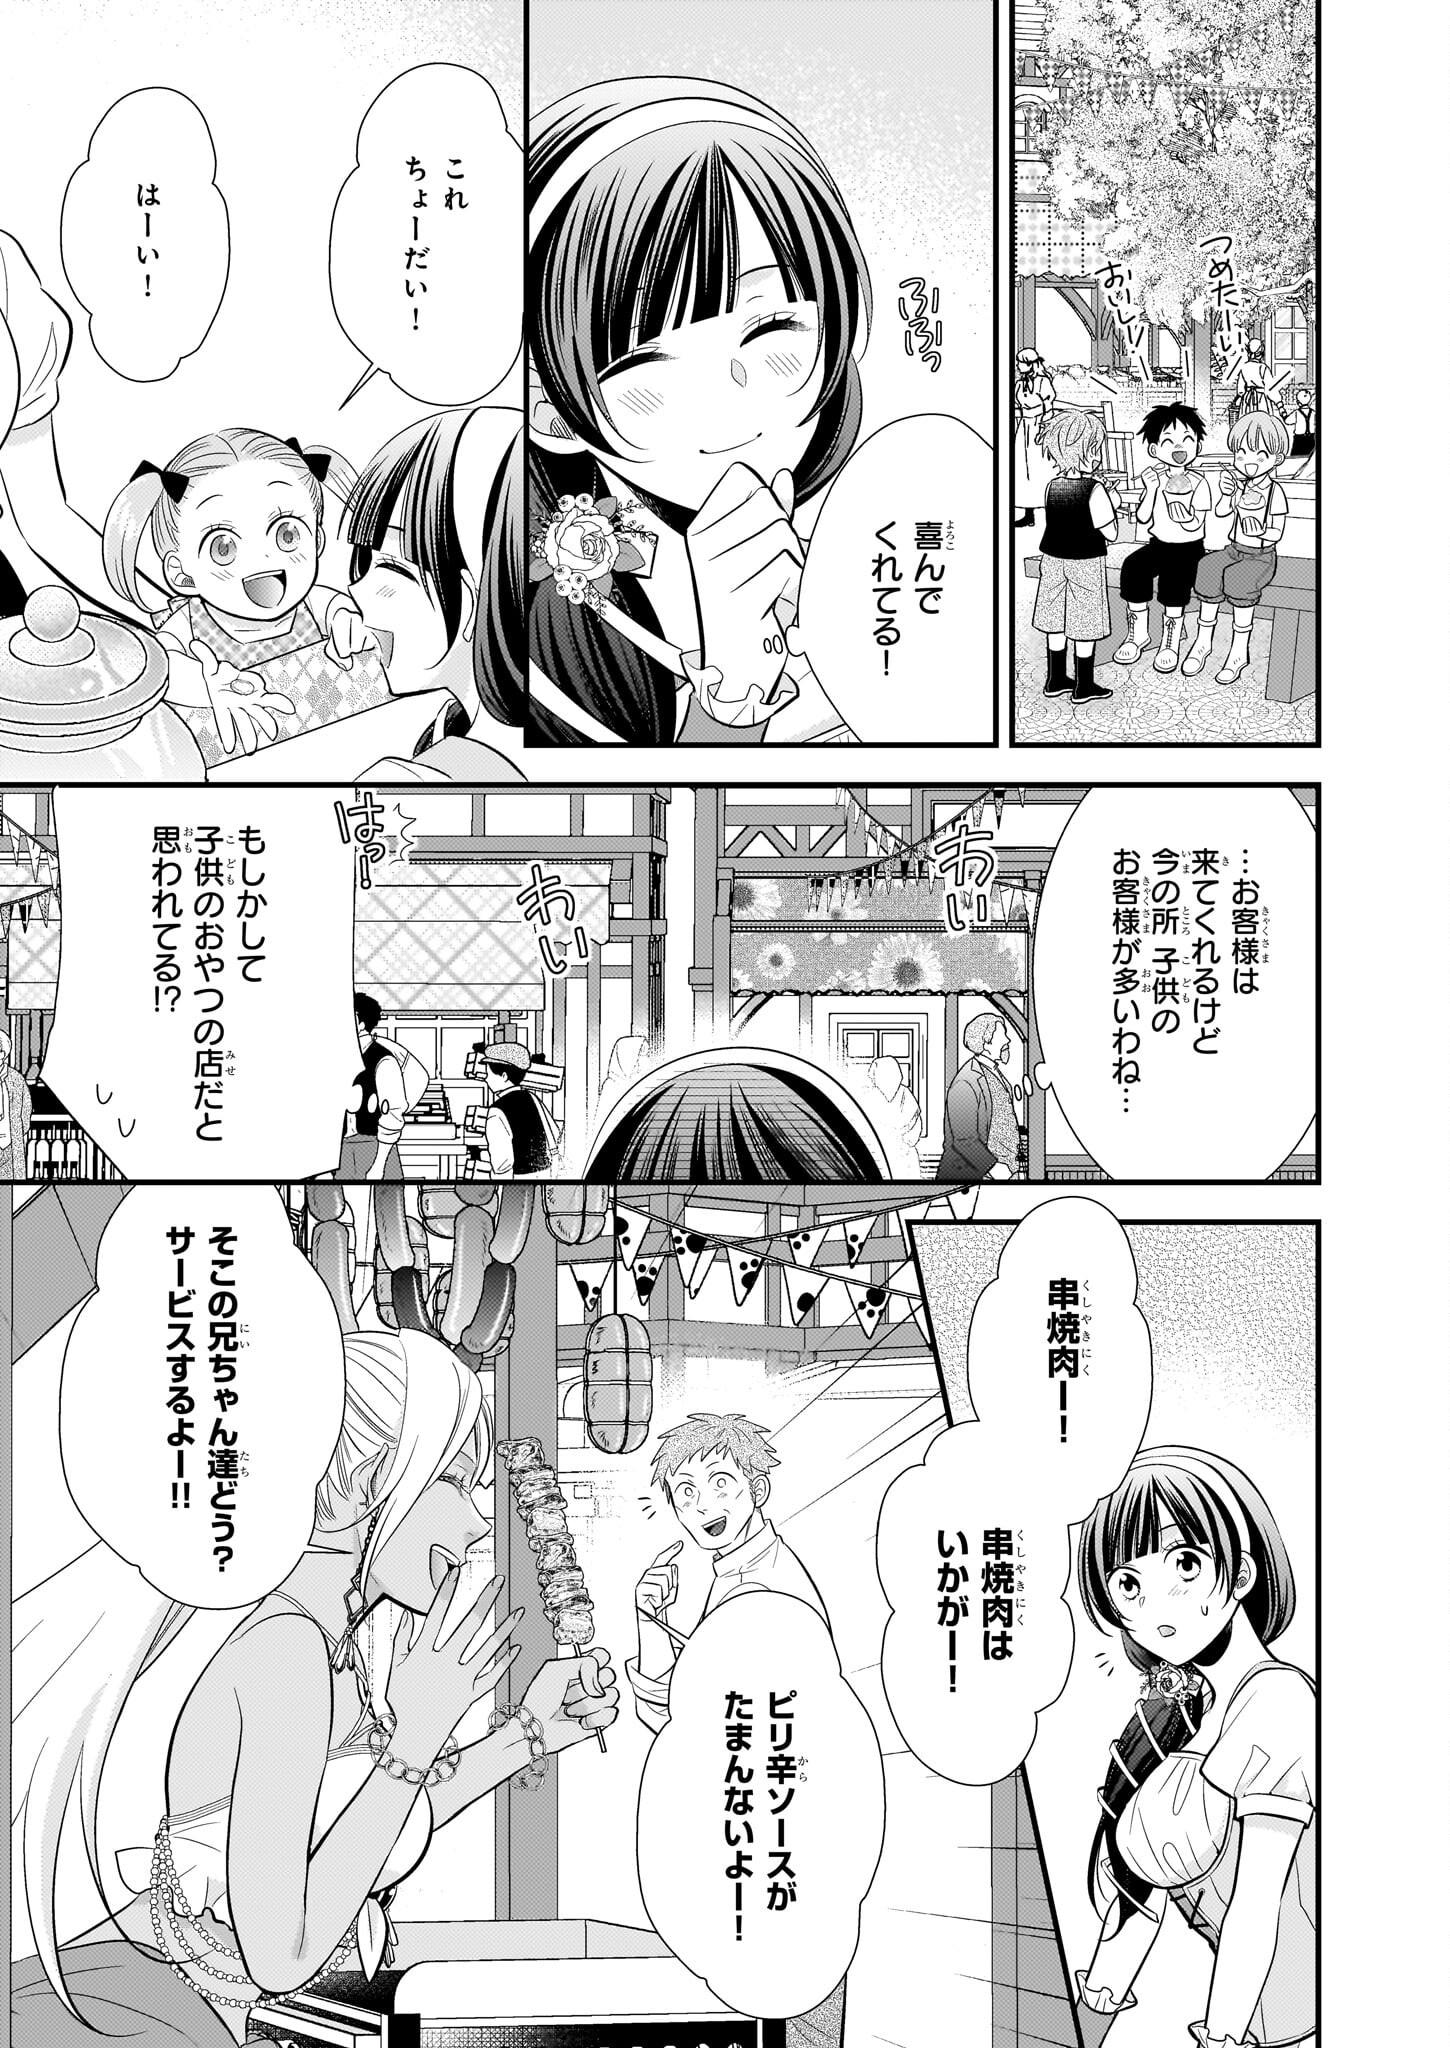 Kouri Mahou no Ice Creamya-san wa, Atsugari Shinkan-sama no Gohiiki desu. - Chapter 9.2 - Page 2